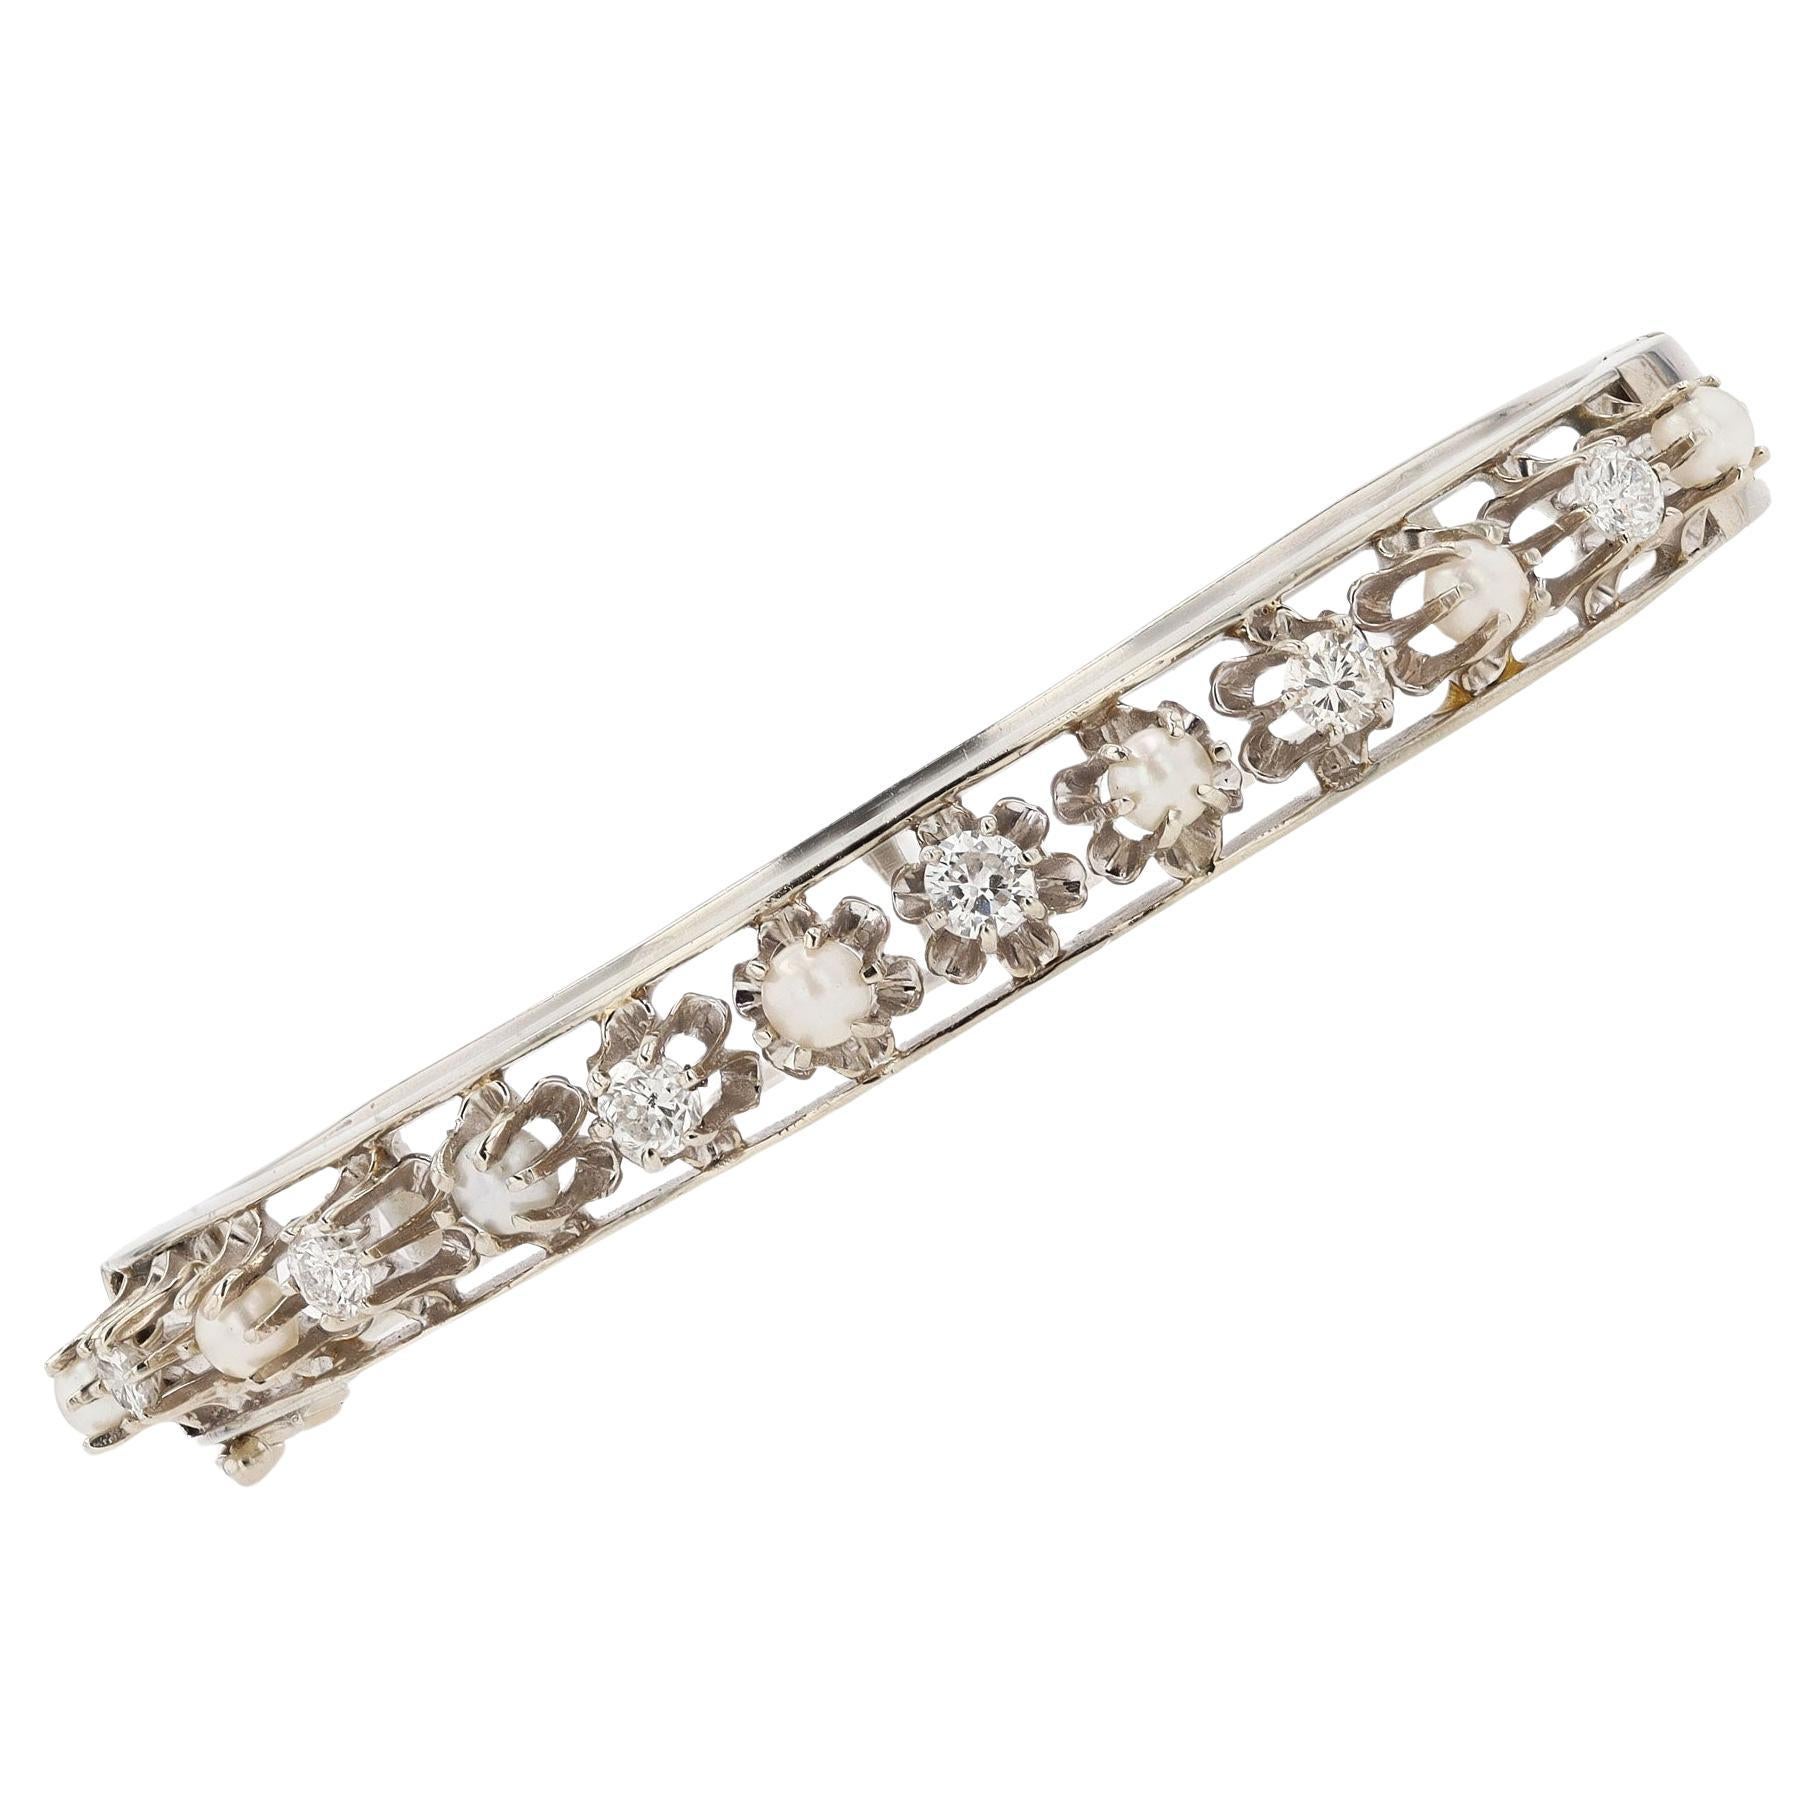  Antique Art Deco Diamond & Pearl Buttercup Bangle Bracelet For Sale